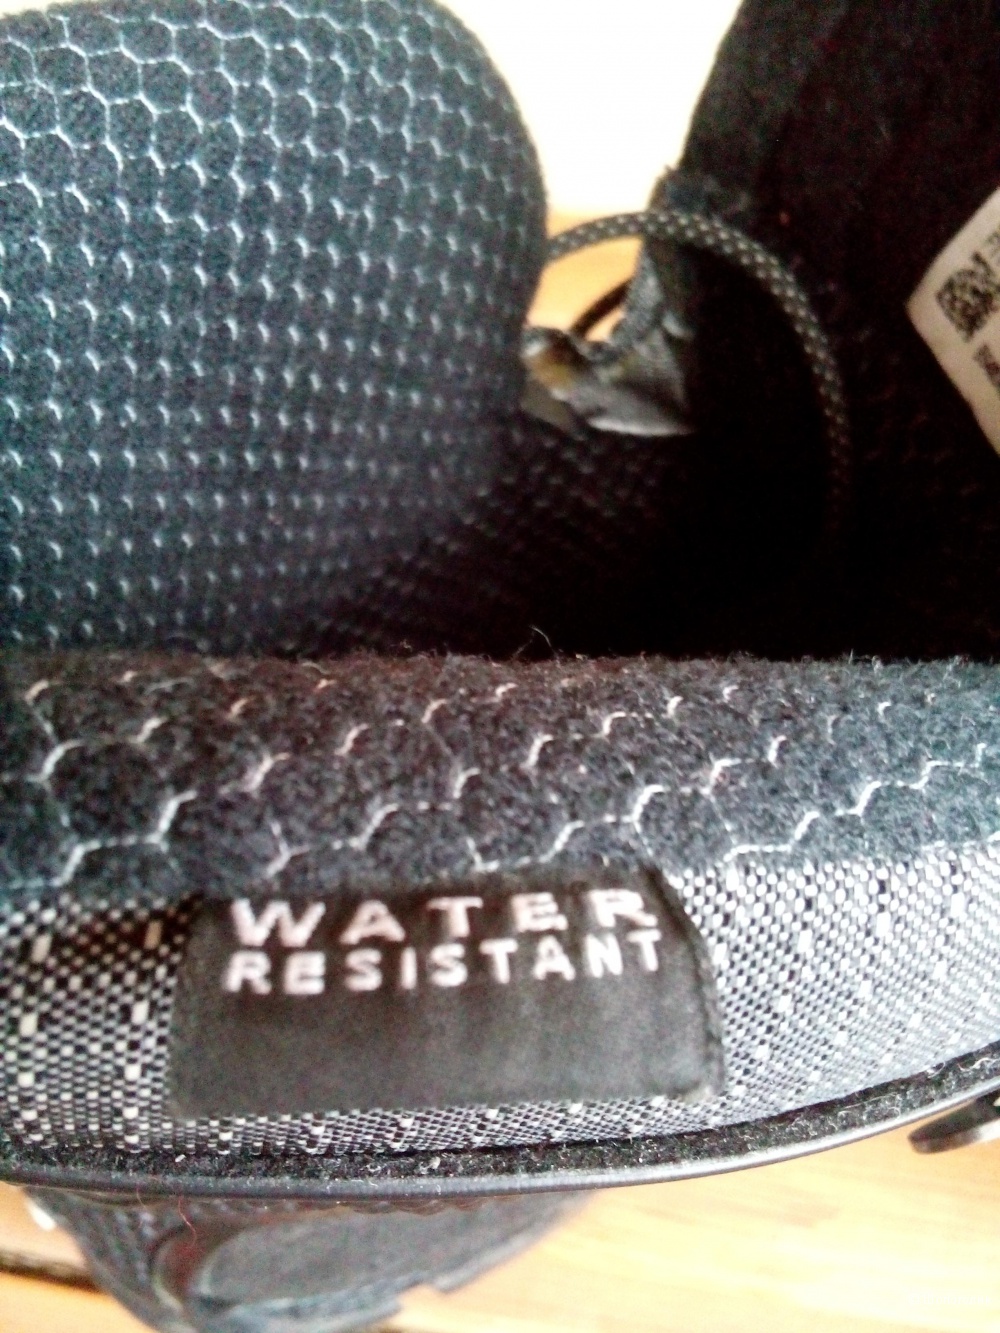 Ботинки-кроссовки ADIDAS Waterproof Climawarm зима-осень в размере 38 FR, 5 1/2 US,5UK